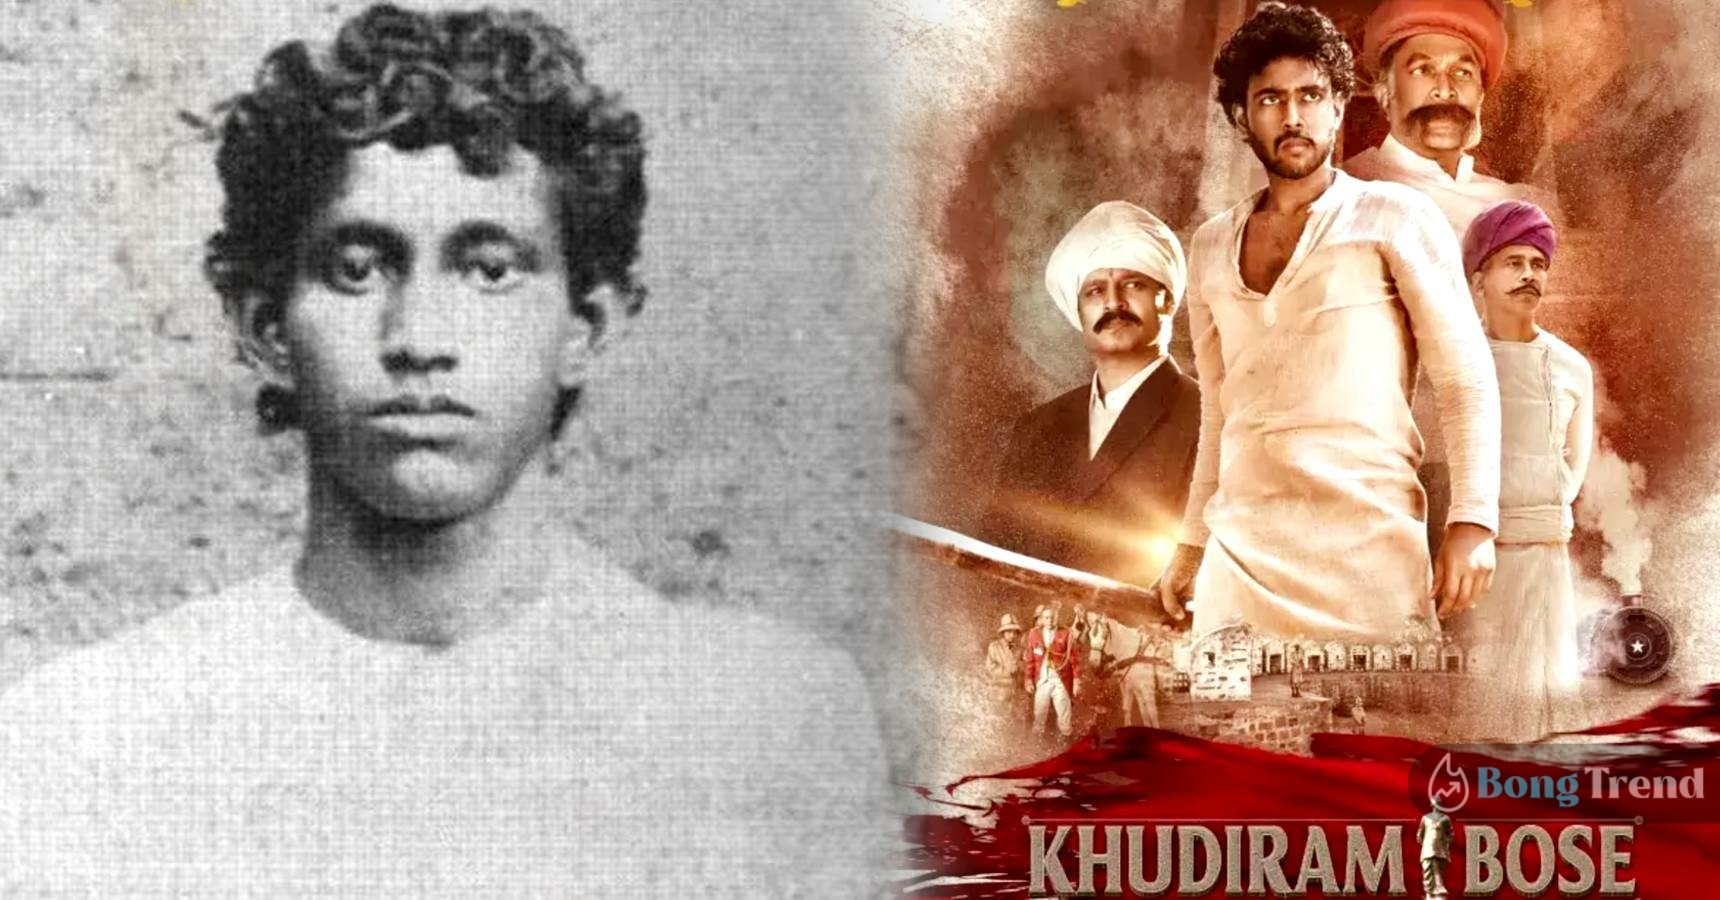 Bengali freedom fighter Shaheed Khudiram Bose’s biopic is made in Telegu industry